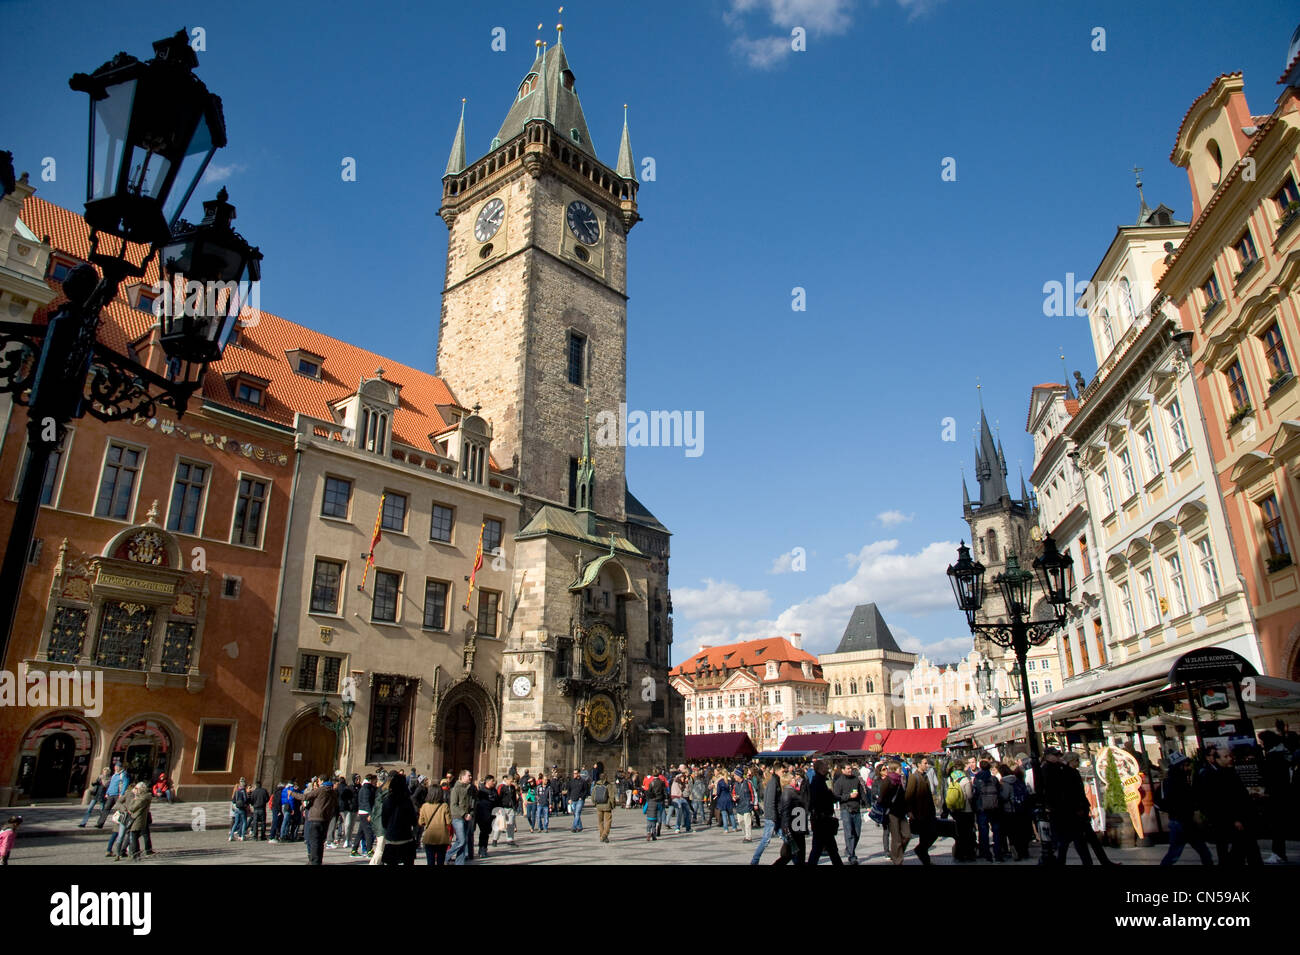 Prag. Tschechische Republik. April 2012. Das geschäftige Zentrum von Prag, Touristen drängen sich dem historischen Ring an einem sonnigen Frühlingstag. Stockfoto